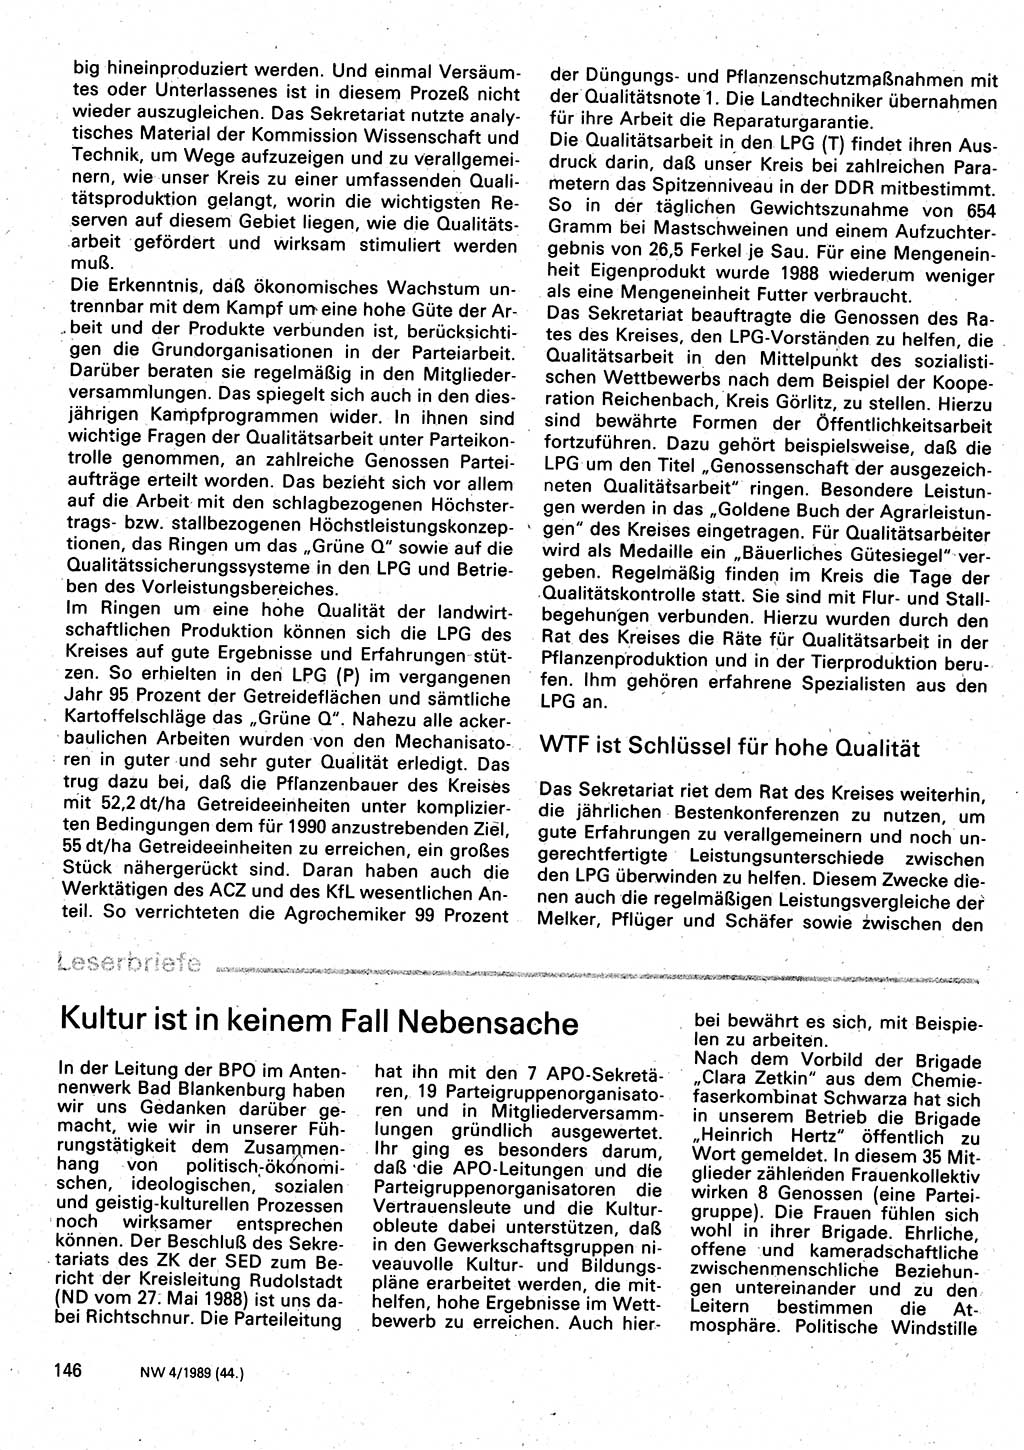 Neuer Weg (NW), Organ des Zentralkomitees (ZK) der SED (Sozialistische Einheitspartei Deutschlands) für Fragen des Parteilebens, 44. Jahrgang [Deutsche Demokratische Republik (DDR)] 1989, Seite 146 (NW ZK SED DDR 1989, S. 146)